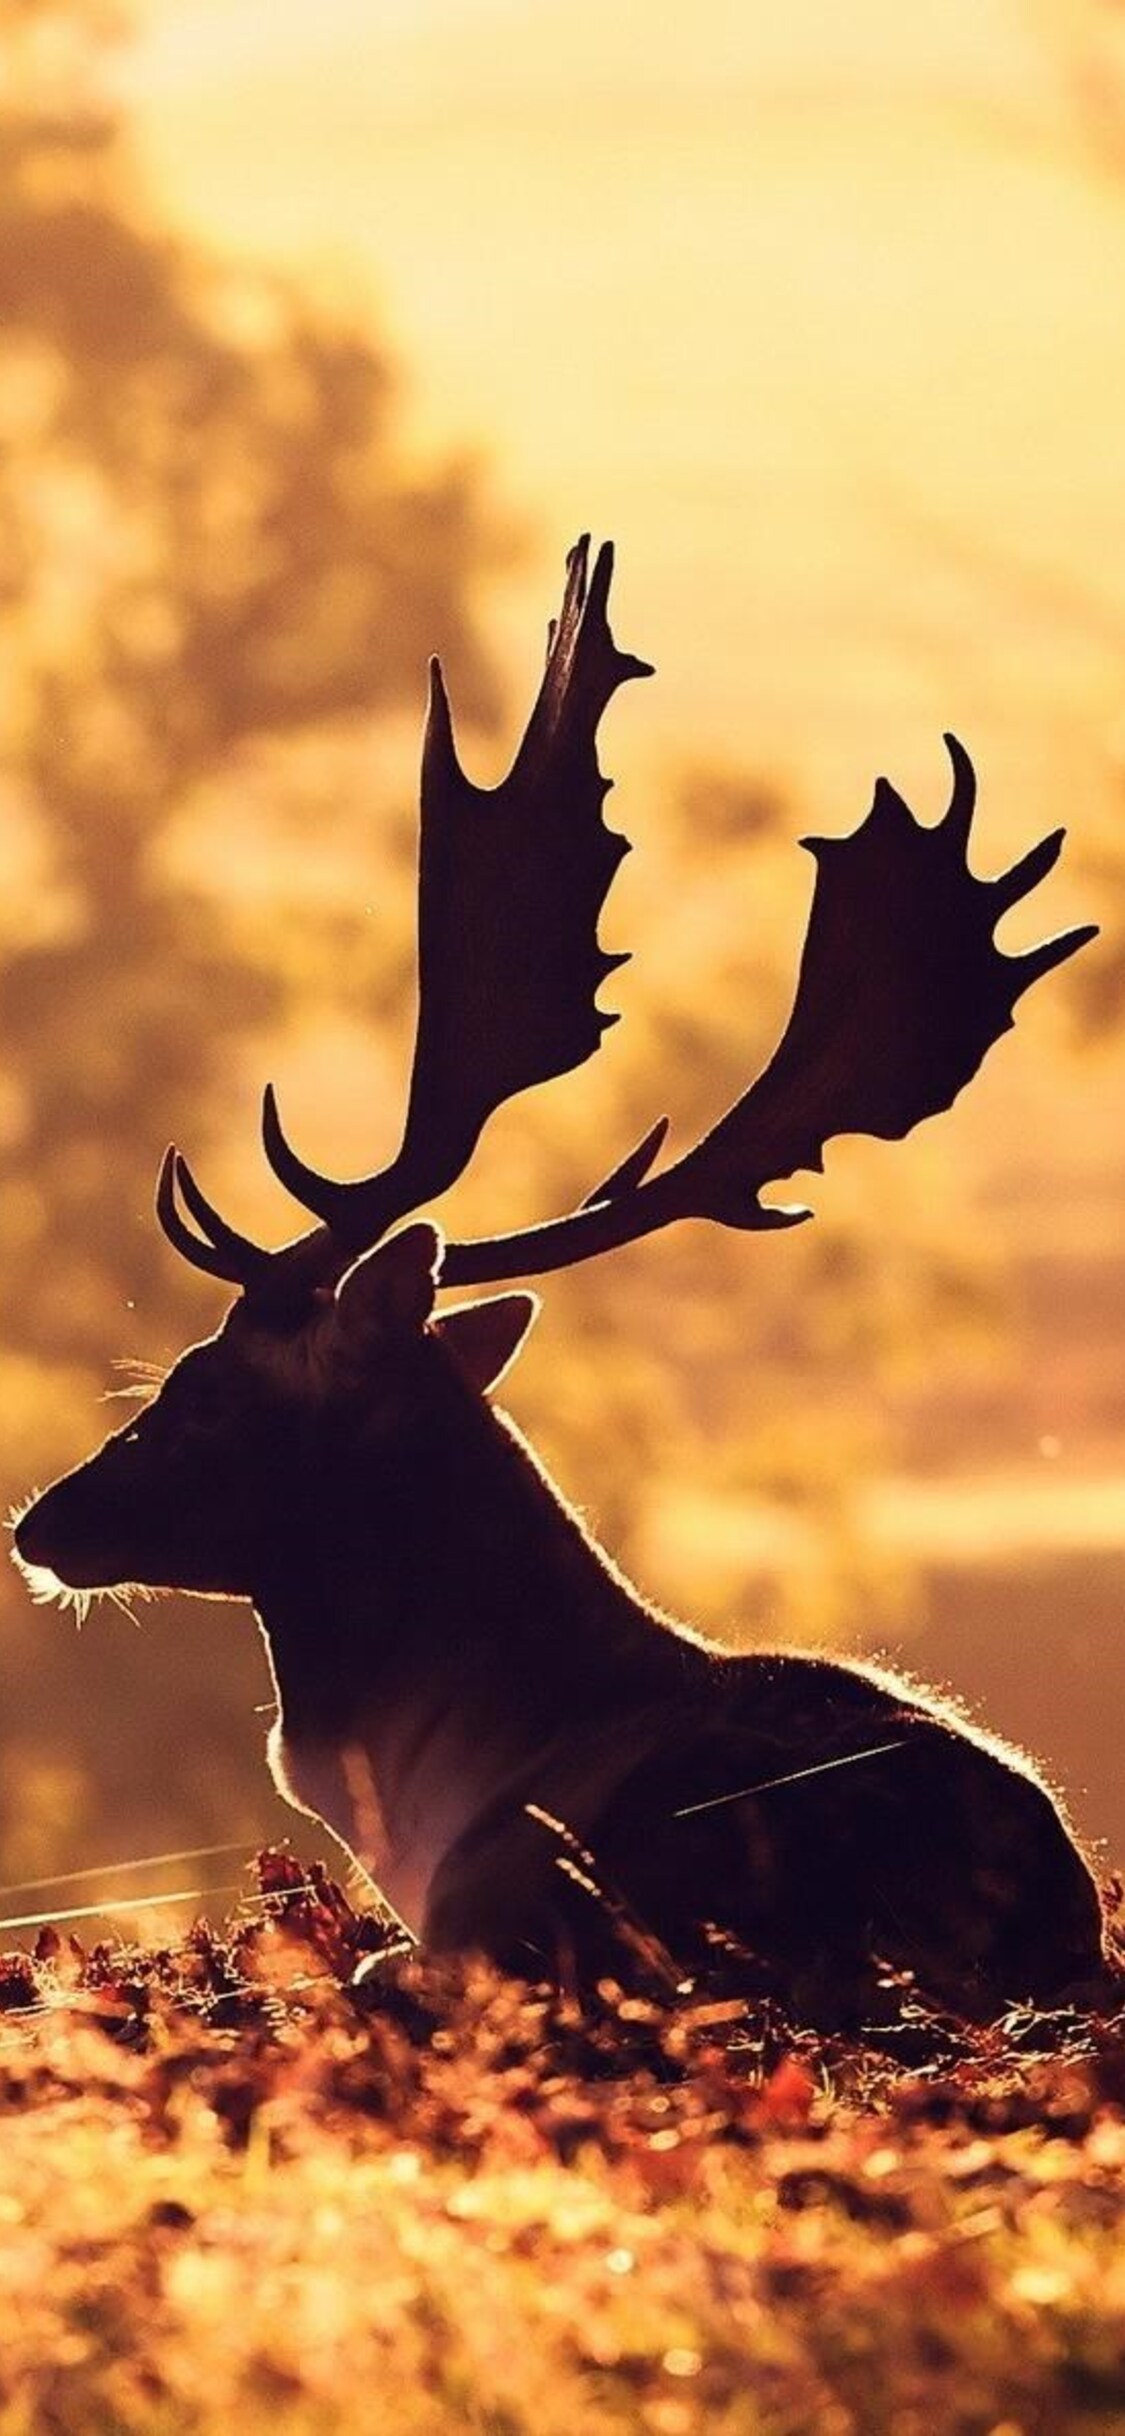 Iphone Deer Wallpapers